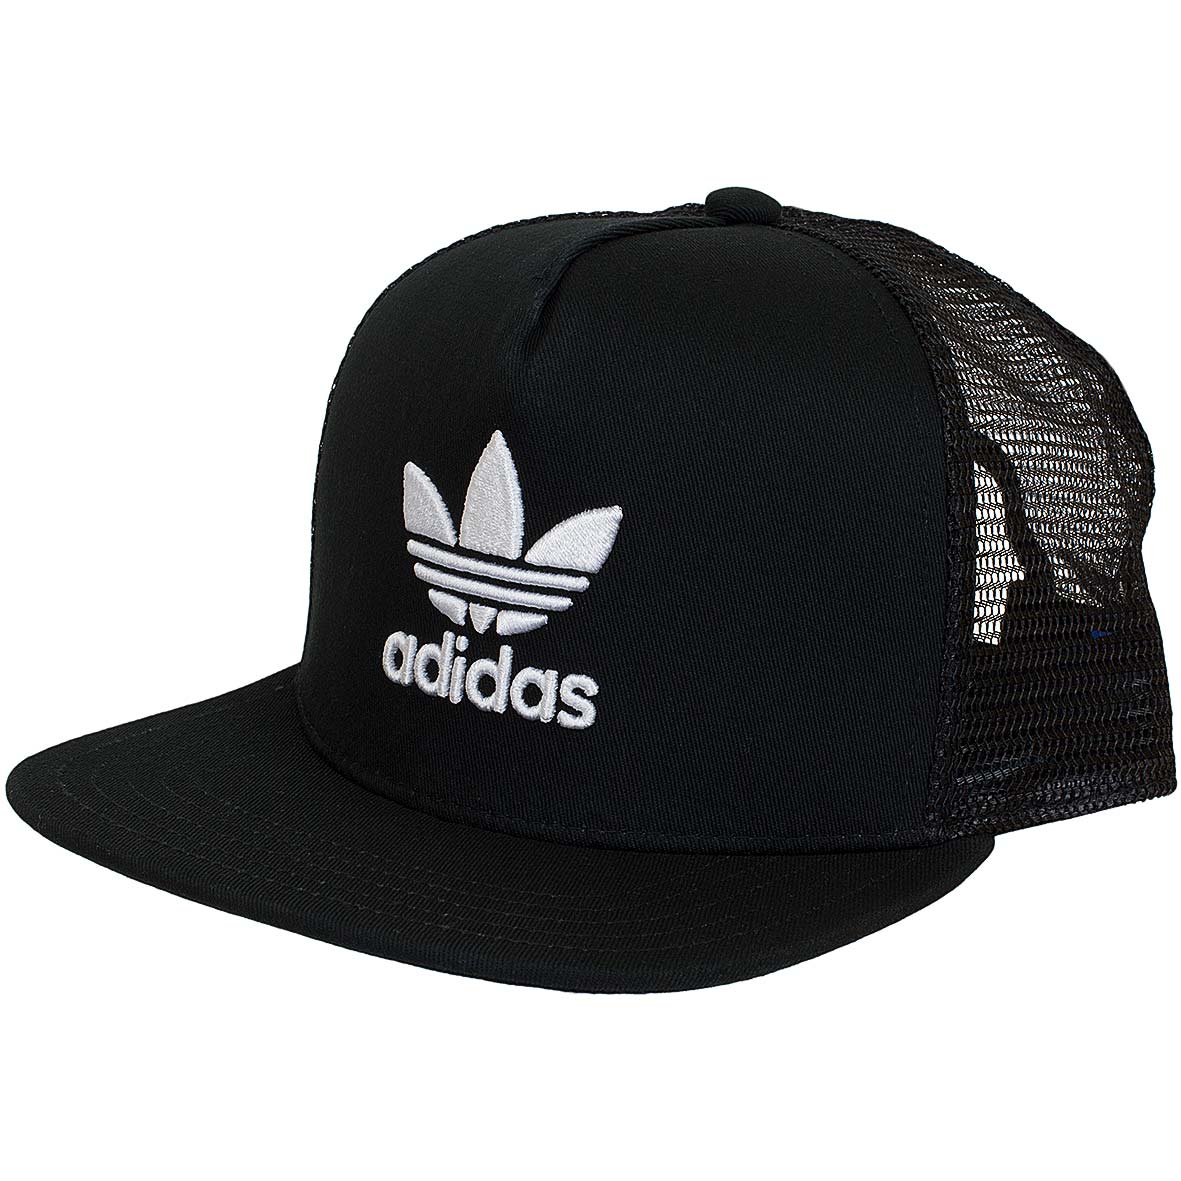 ☆ Adidas Originals Snapback Cap Trefoil Trucker schwarz - hier bestellen!